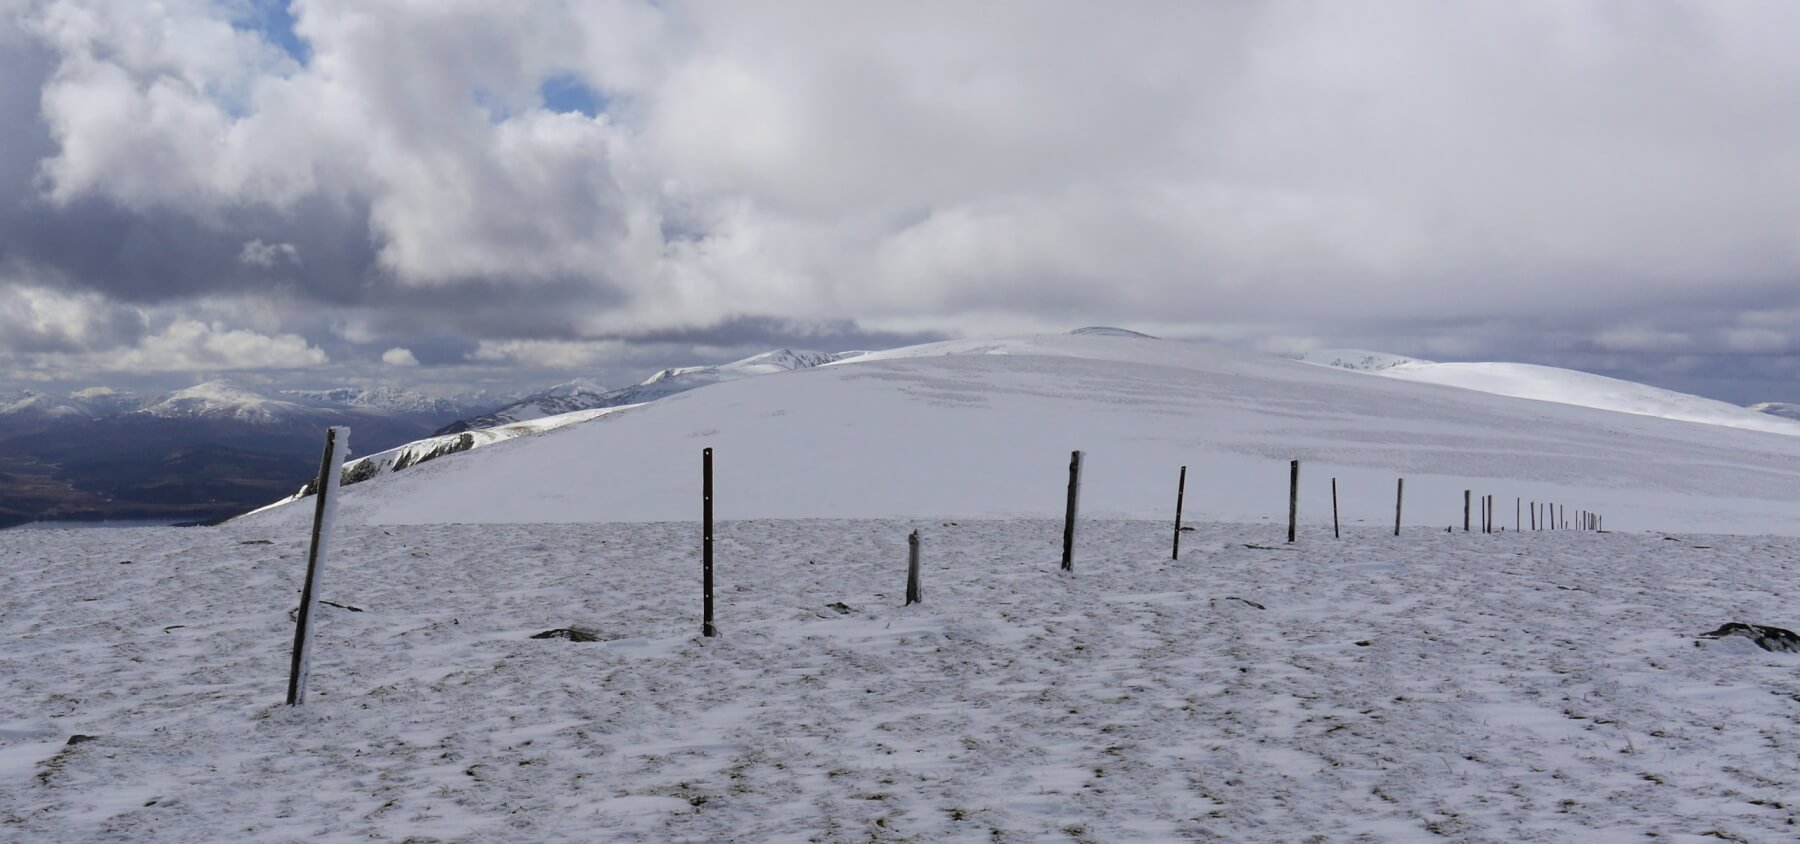 Bonus photo of Carn Liath plateau